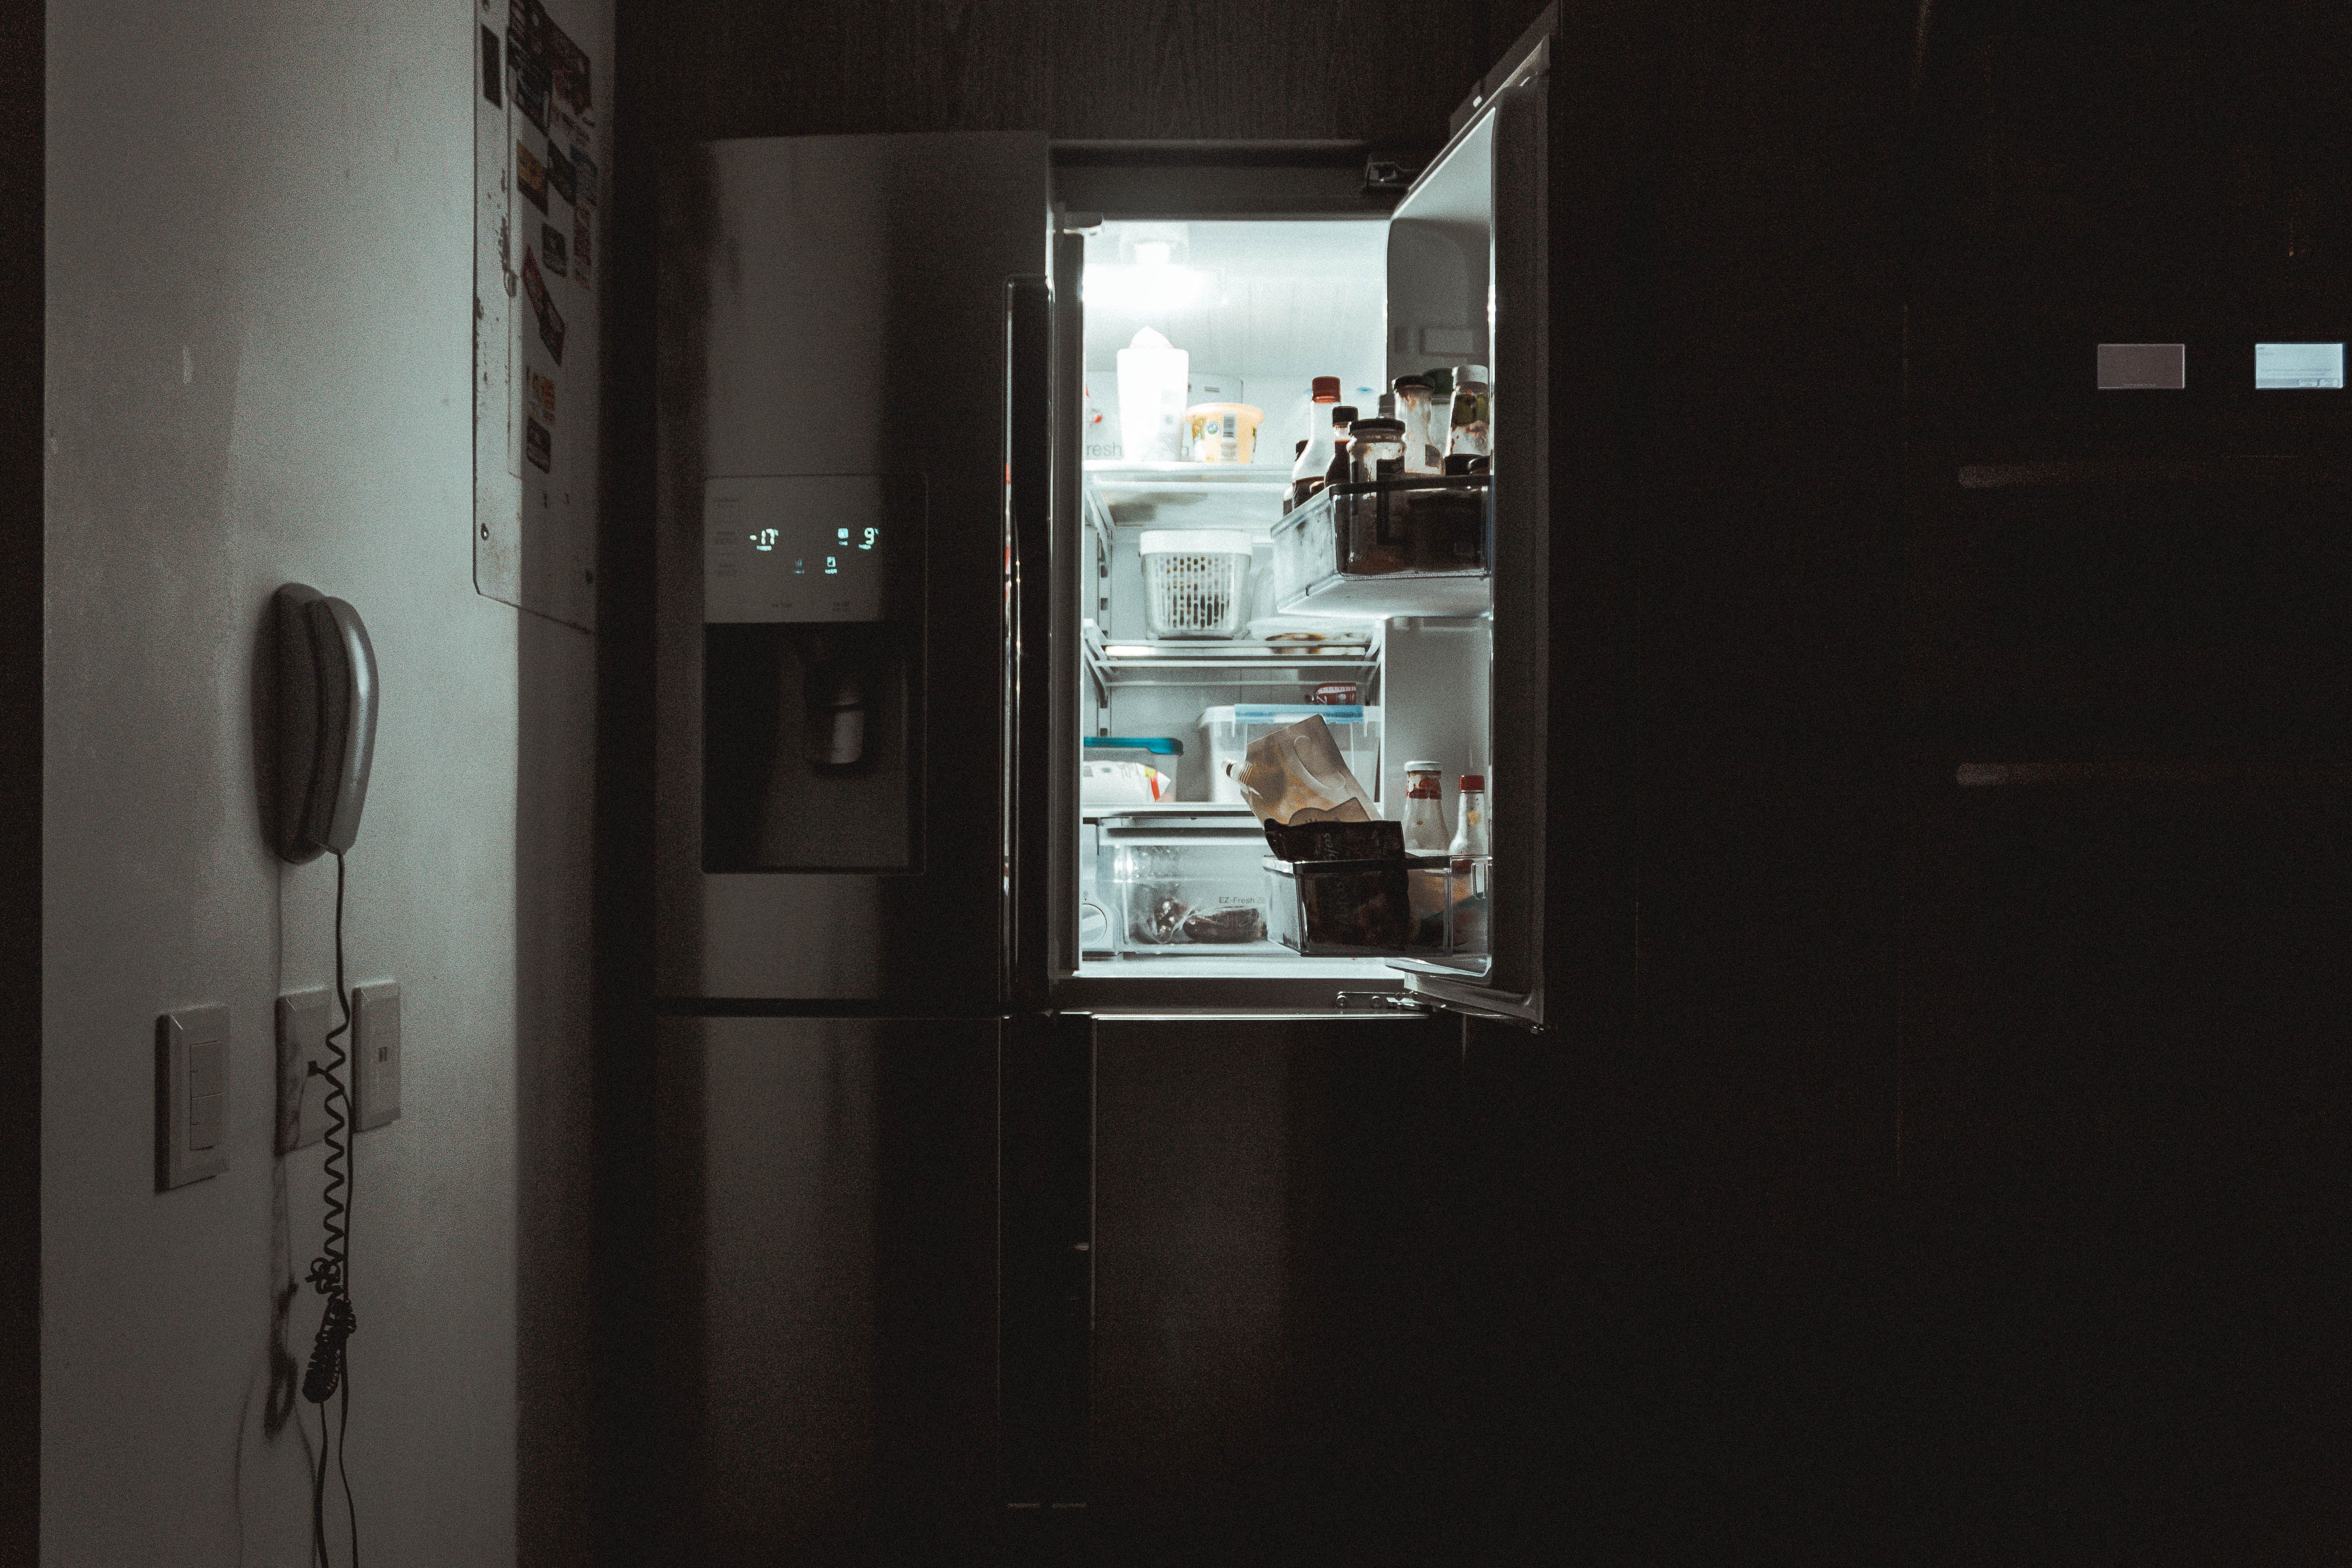 Як почистити холодильник від неприємного запаху всередині - 3 незамінні лайфхаки 